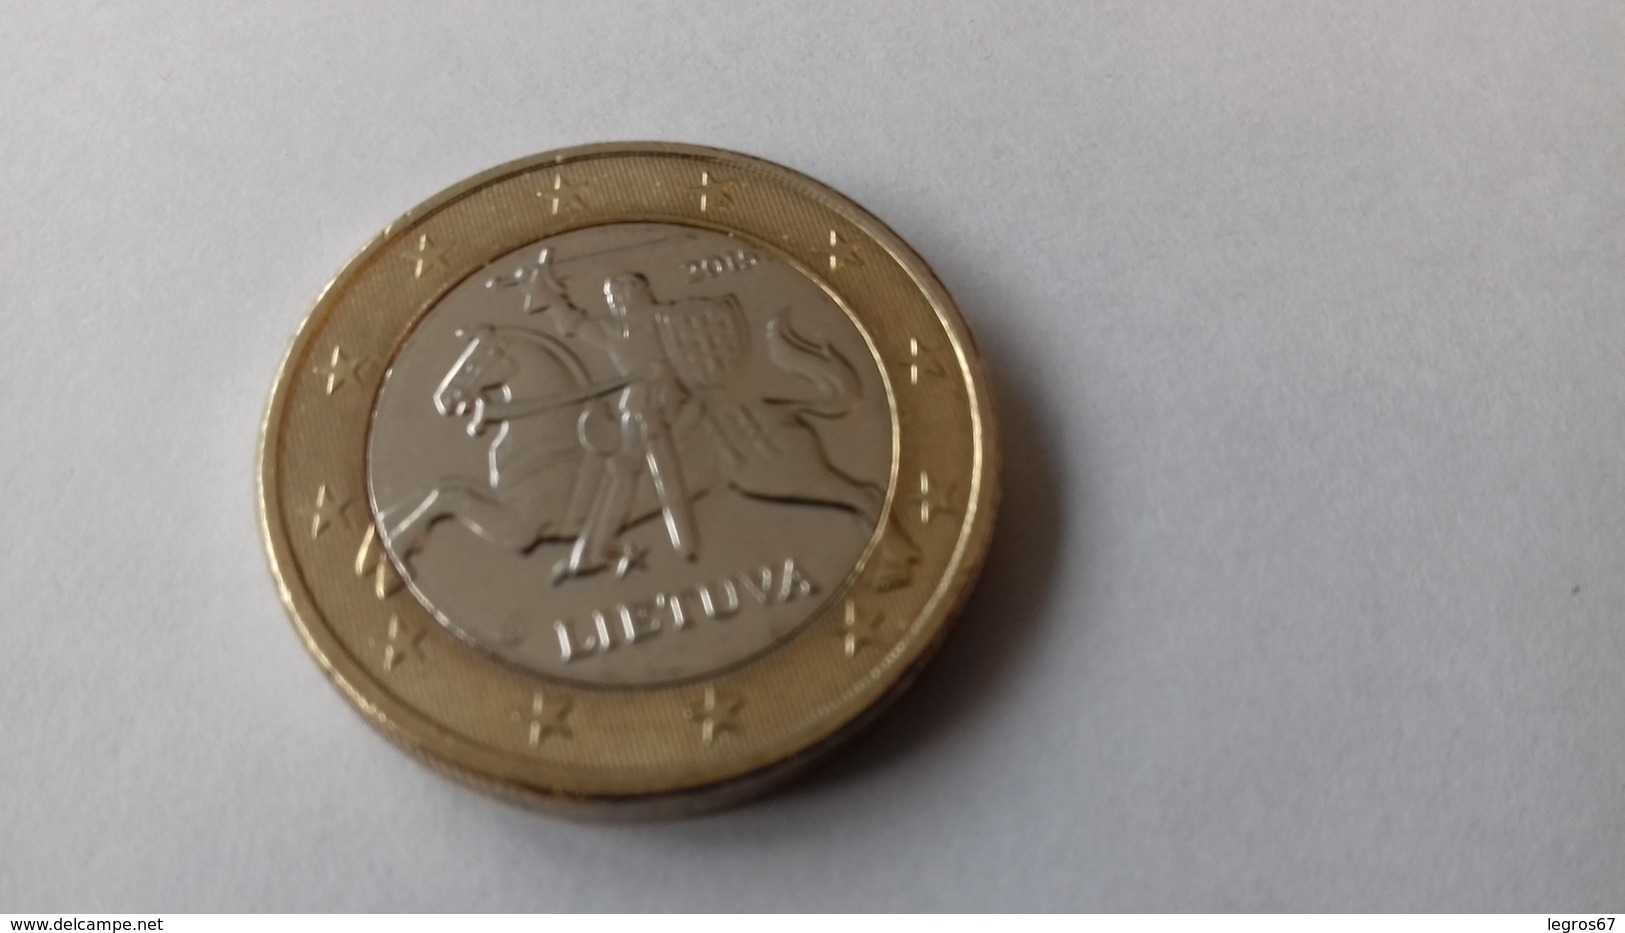 PIECE DE 1 EURO LITUANIE 2015 - Lithuania